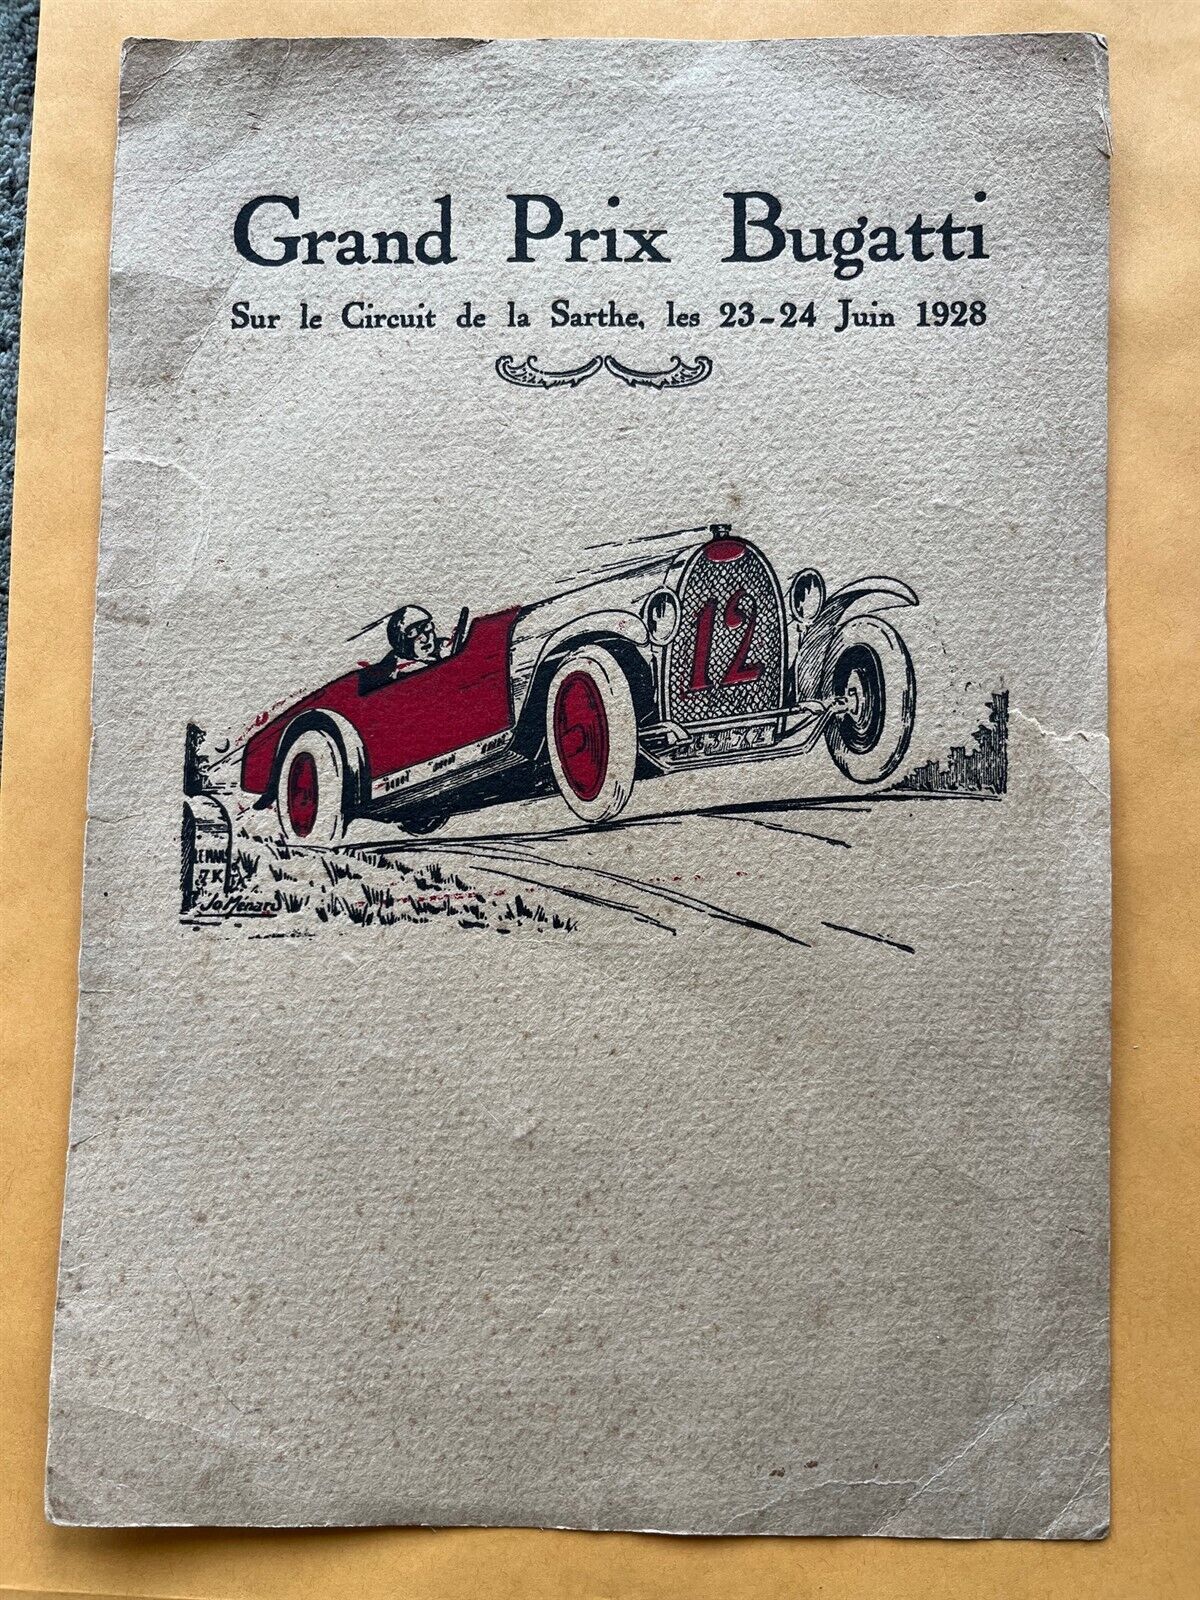 Poster 1928 Grand Prix Bugatti de La Sarthe Le Mans Track original racing poster